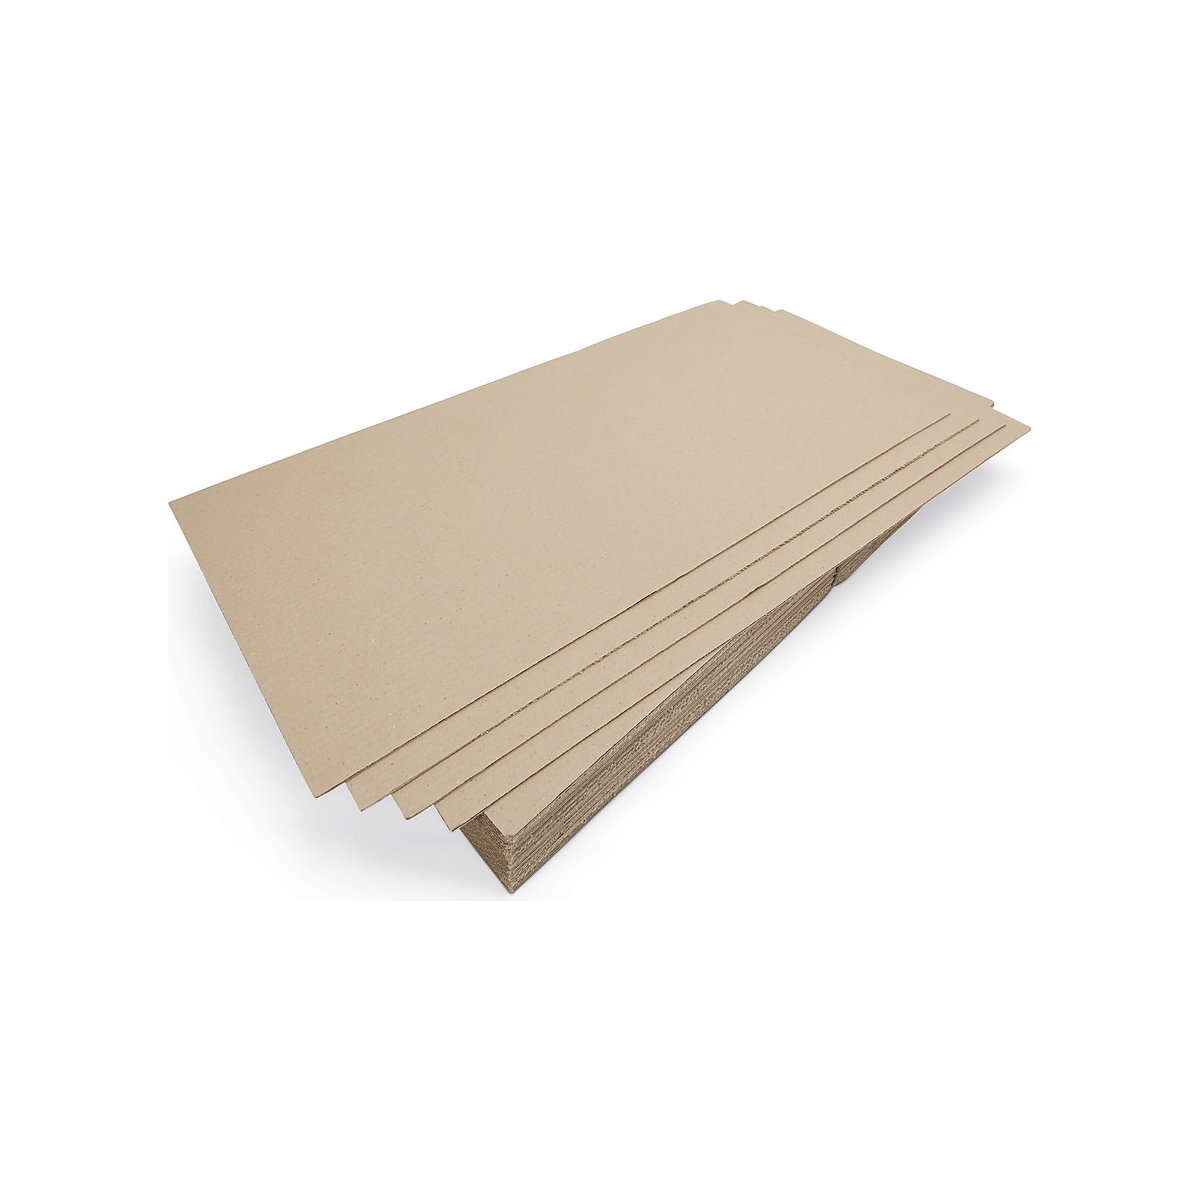 Plaque intercalaire pour palettes – terra: carton ondulé, double cannelure,  lot de 10